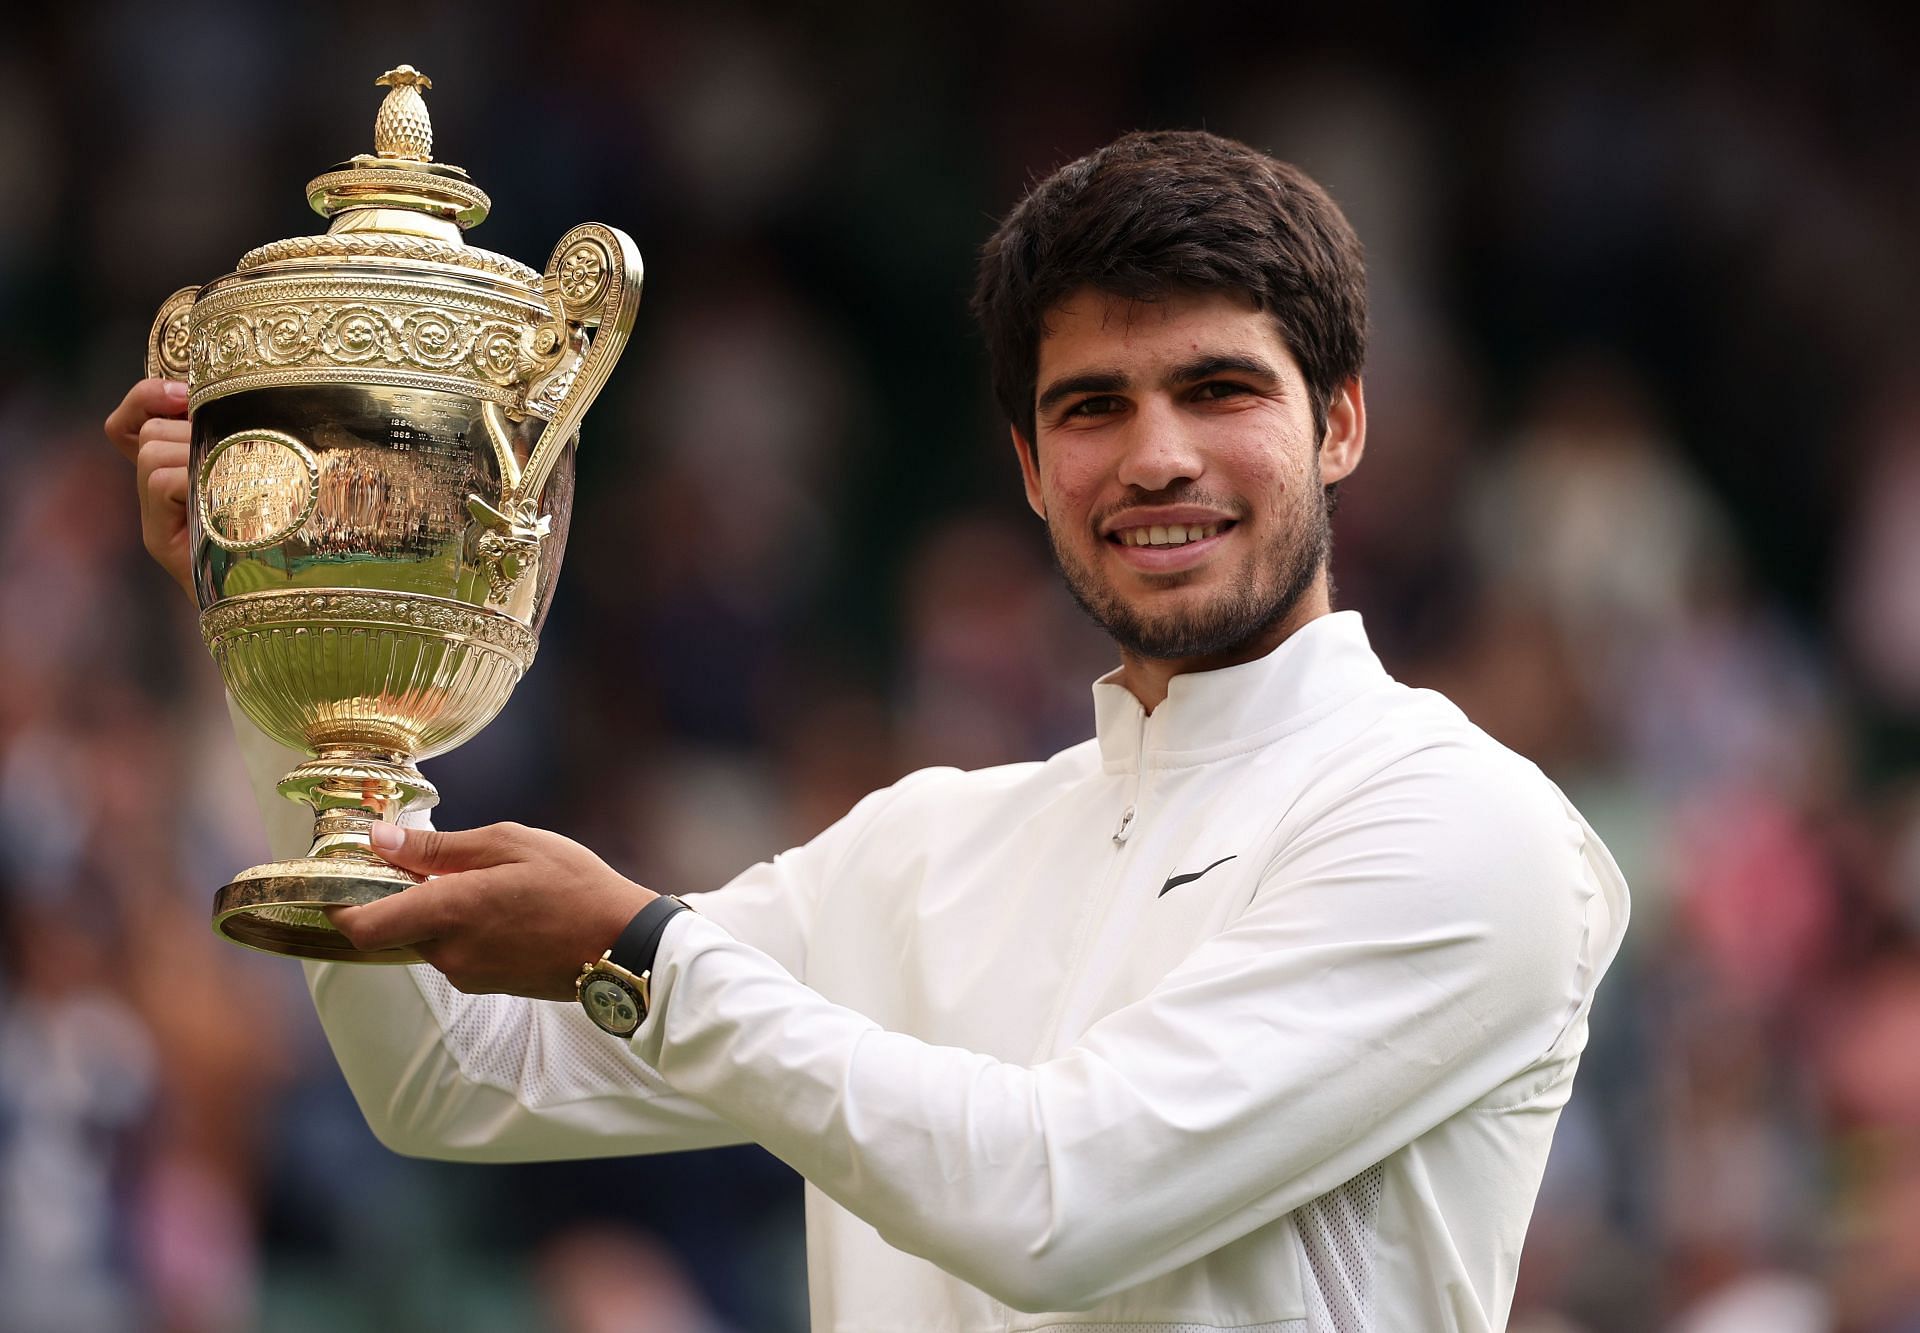 Carlos Alcaraz wins the 2023 Wimbledon Championships